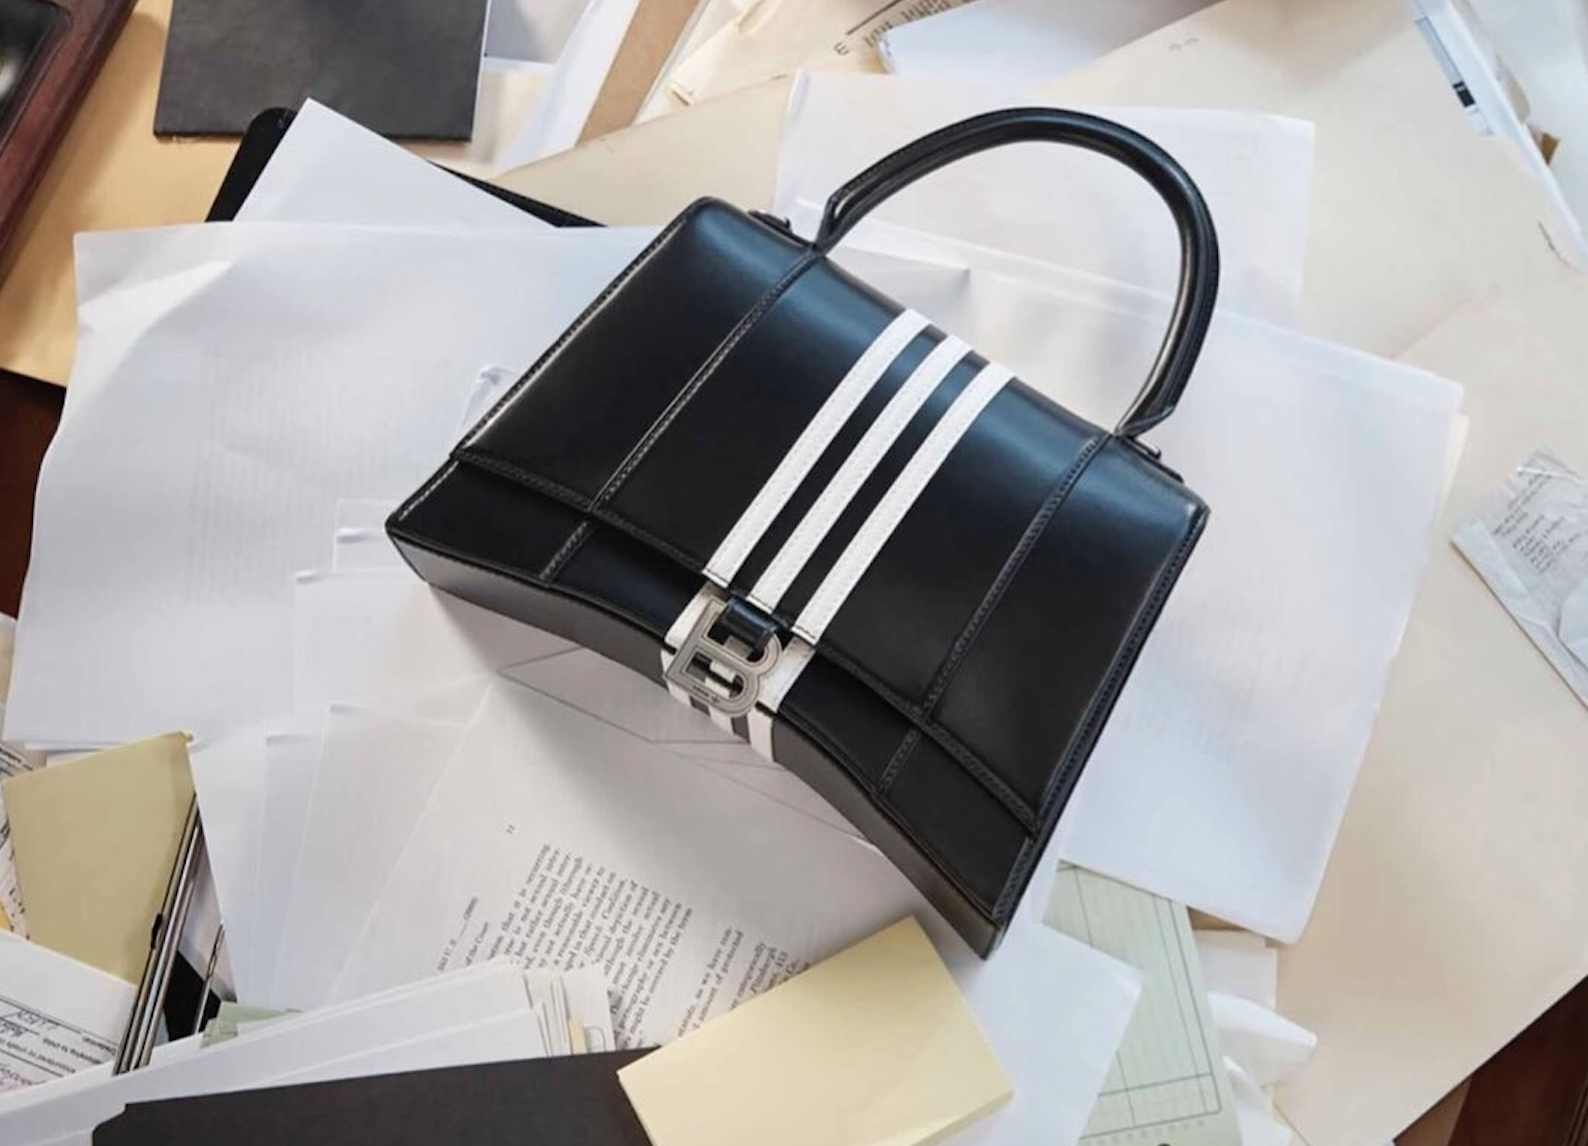 Balenciaga bag on a desk